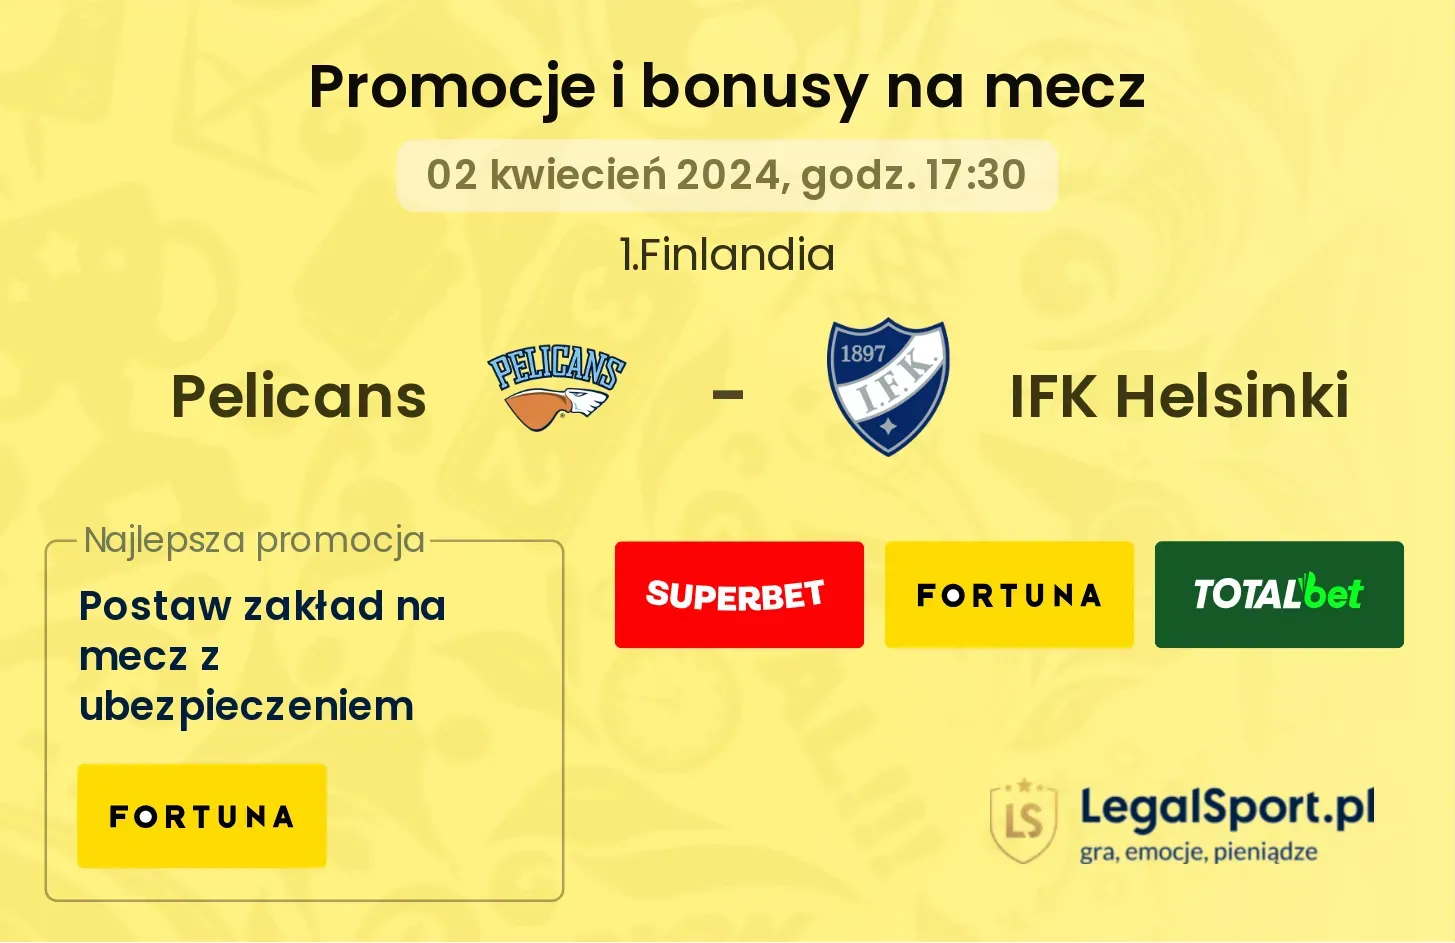 Pelicans - IFK Helsinki promocje bonusy na mecz